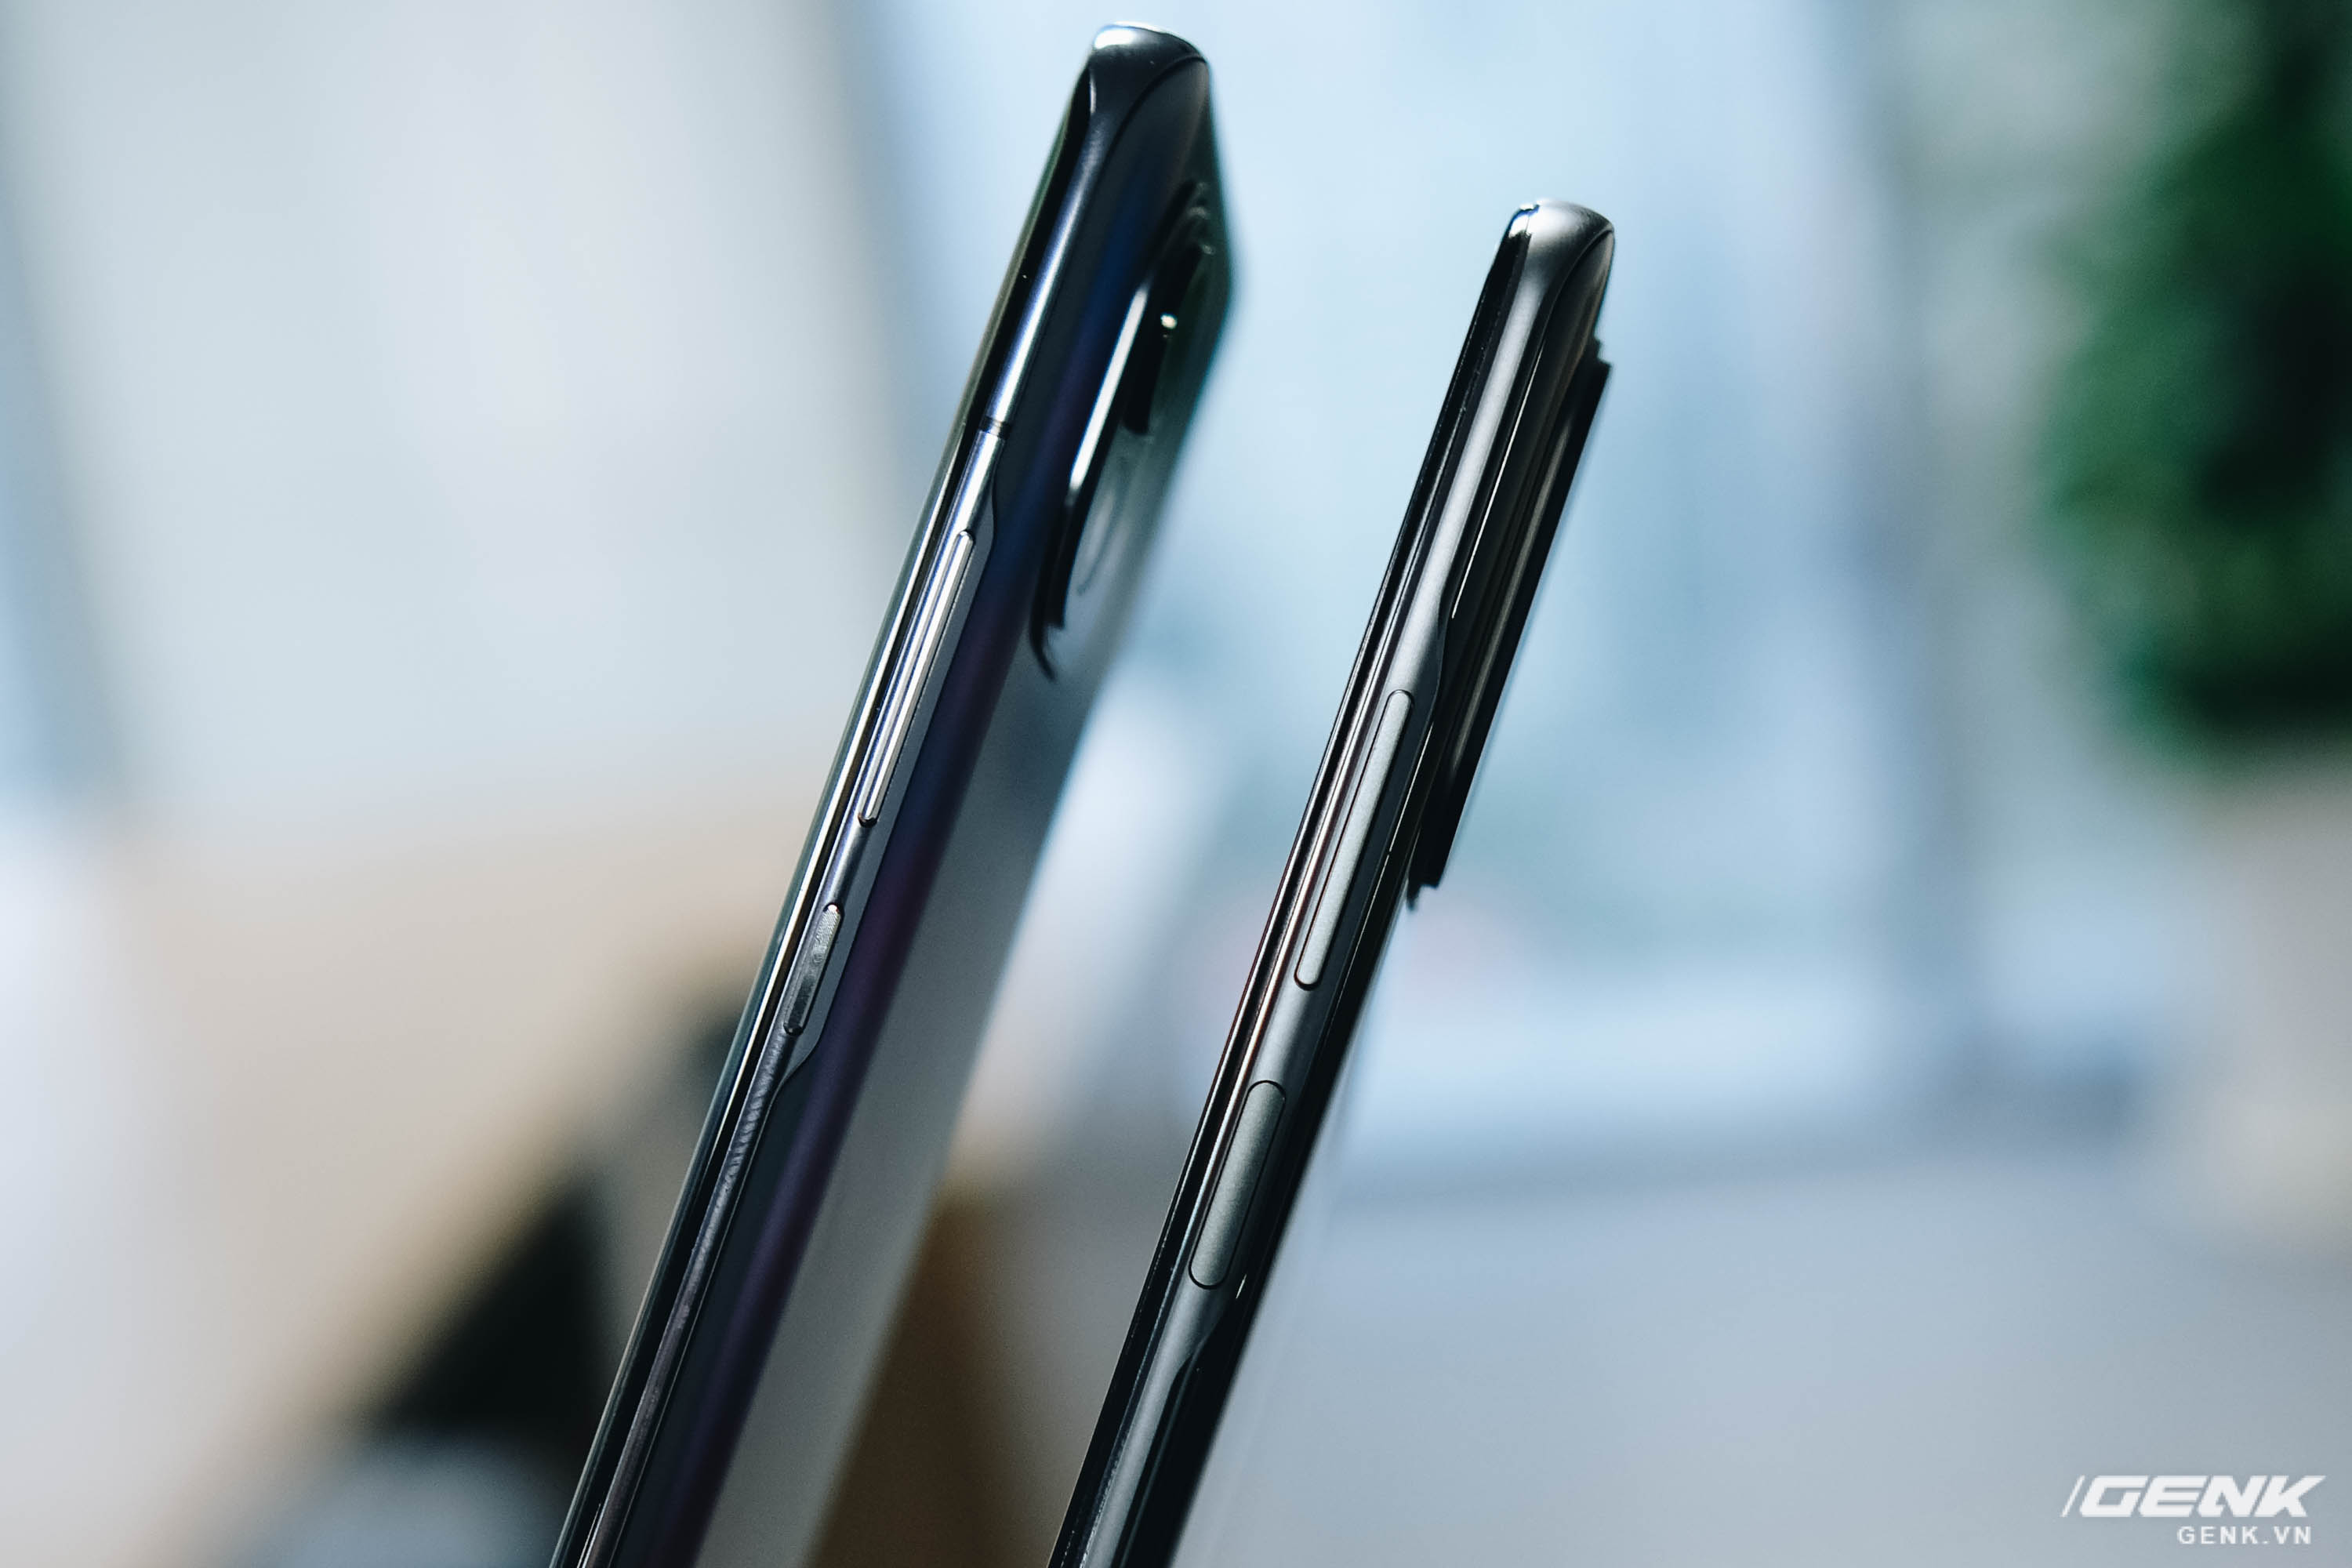 So sánh Redmi K40 Pro và Xiaomi Mi 11: Bộ đôi smartphone Snapdragon 888, màn hình 120Hz giá rẻ - Ảnh 4.